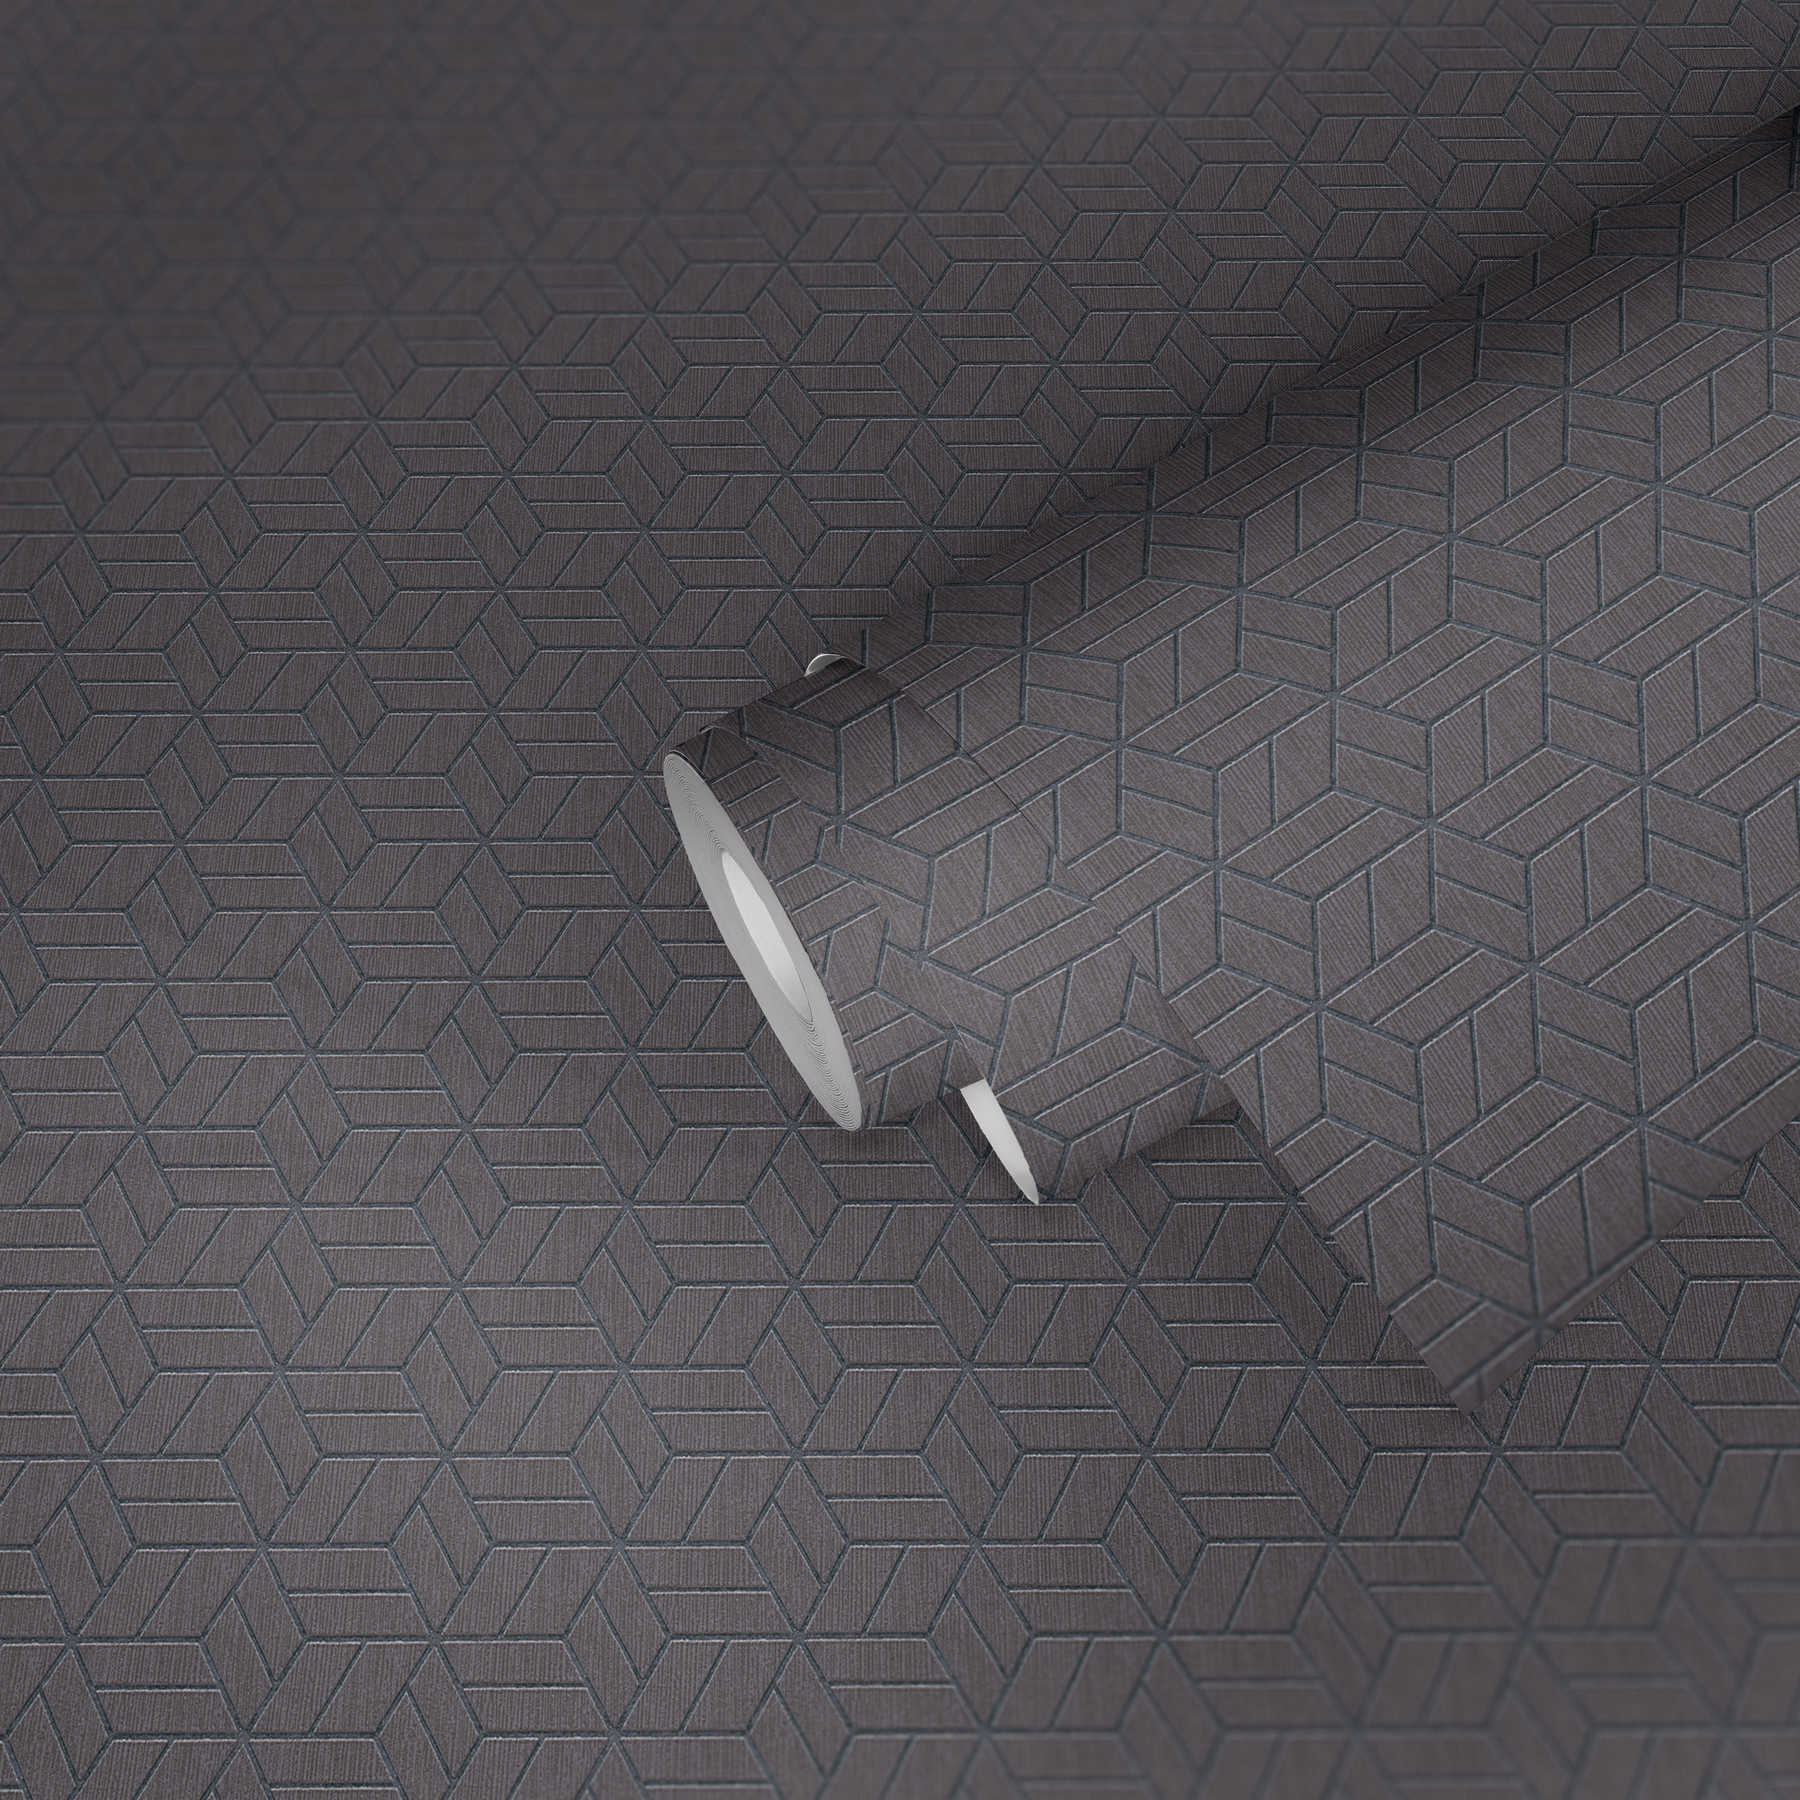             Wallpaper geometric pattern & glitter effect - grey, silver
        